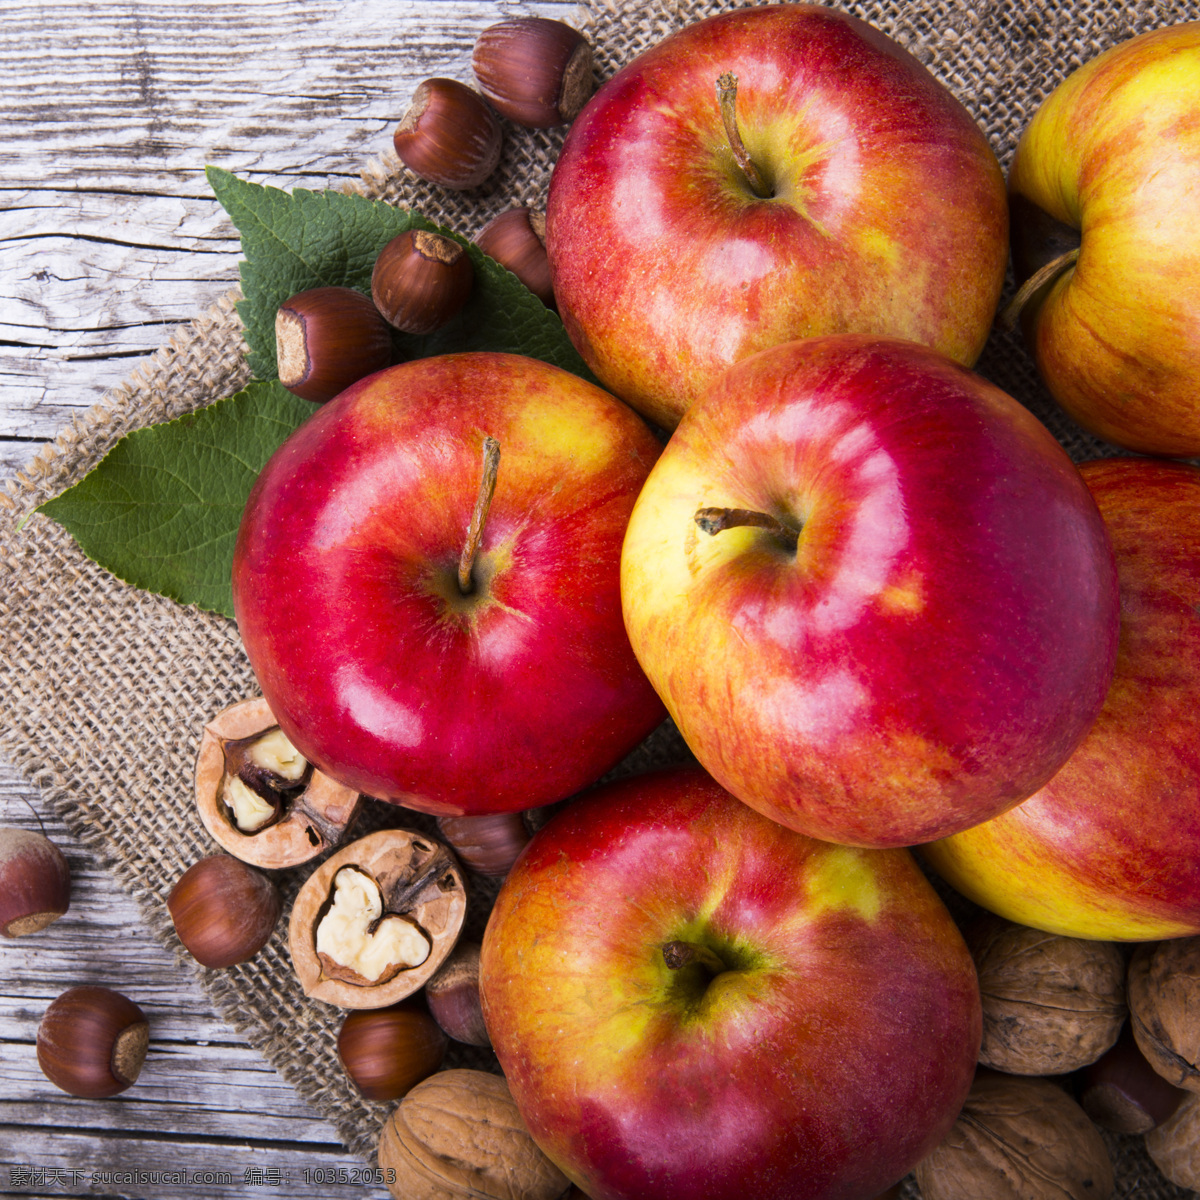 新鲜 苹果 坚果 板栗 核桃 新鲜苹果 新鲜水果 苹果摄影 苹果图片 餐饮美食